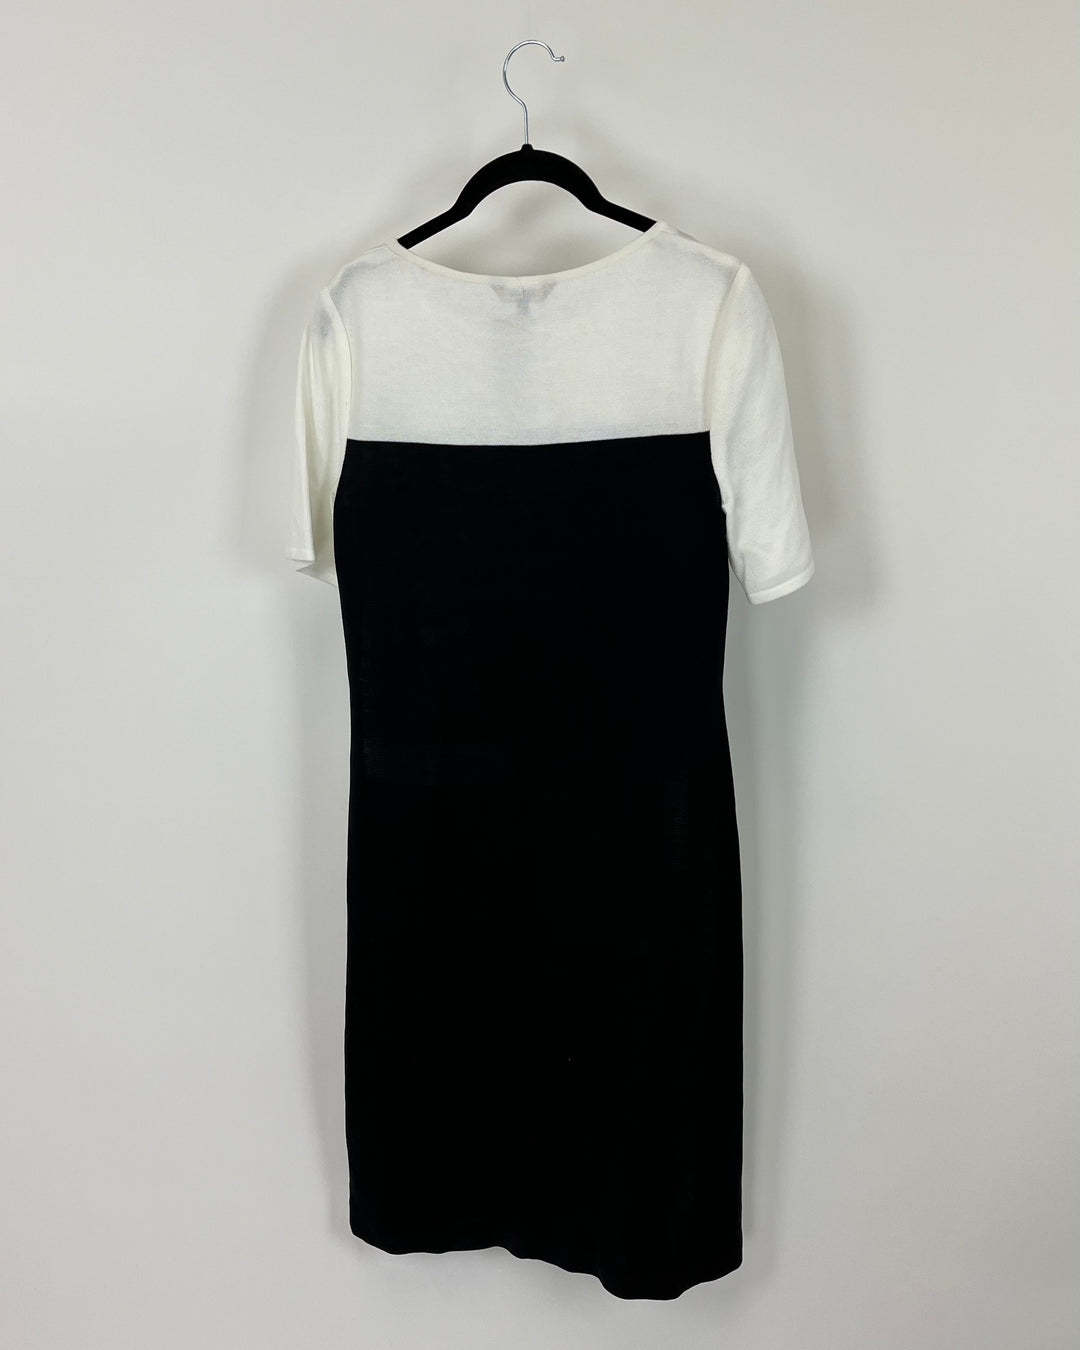 Color Block Dress - Size 2-4